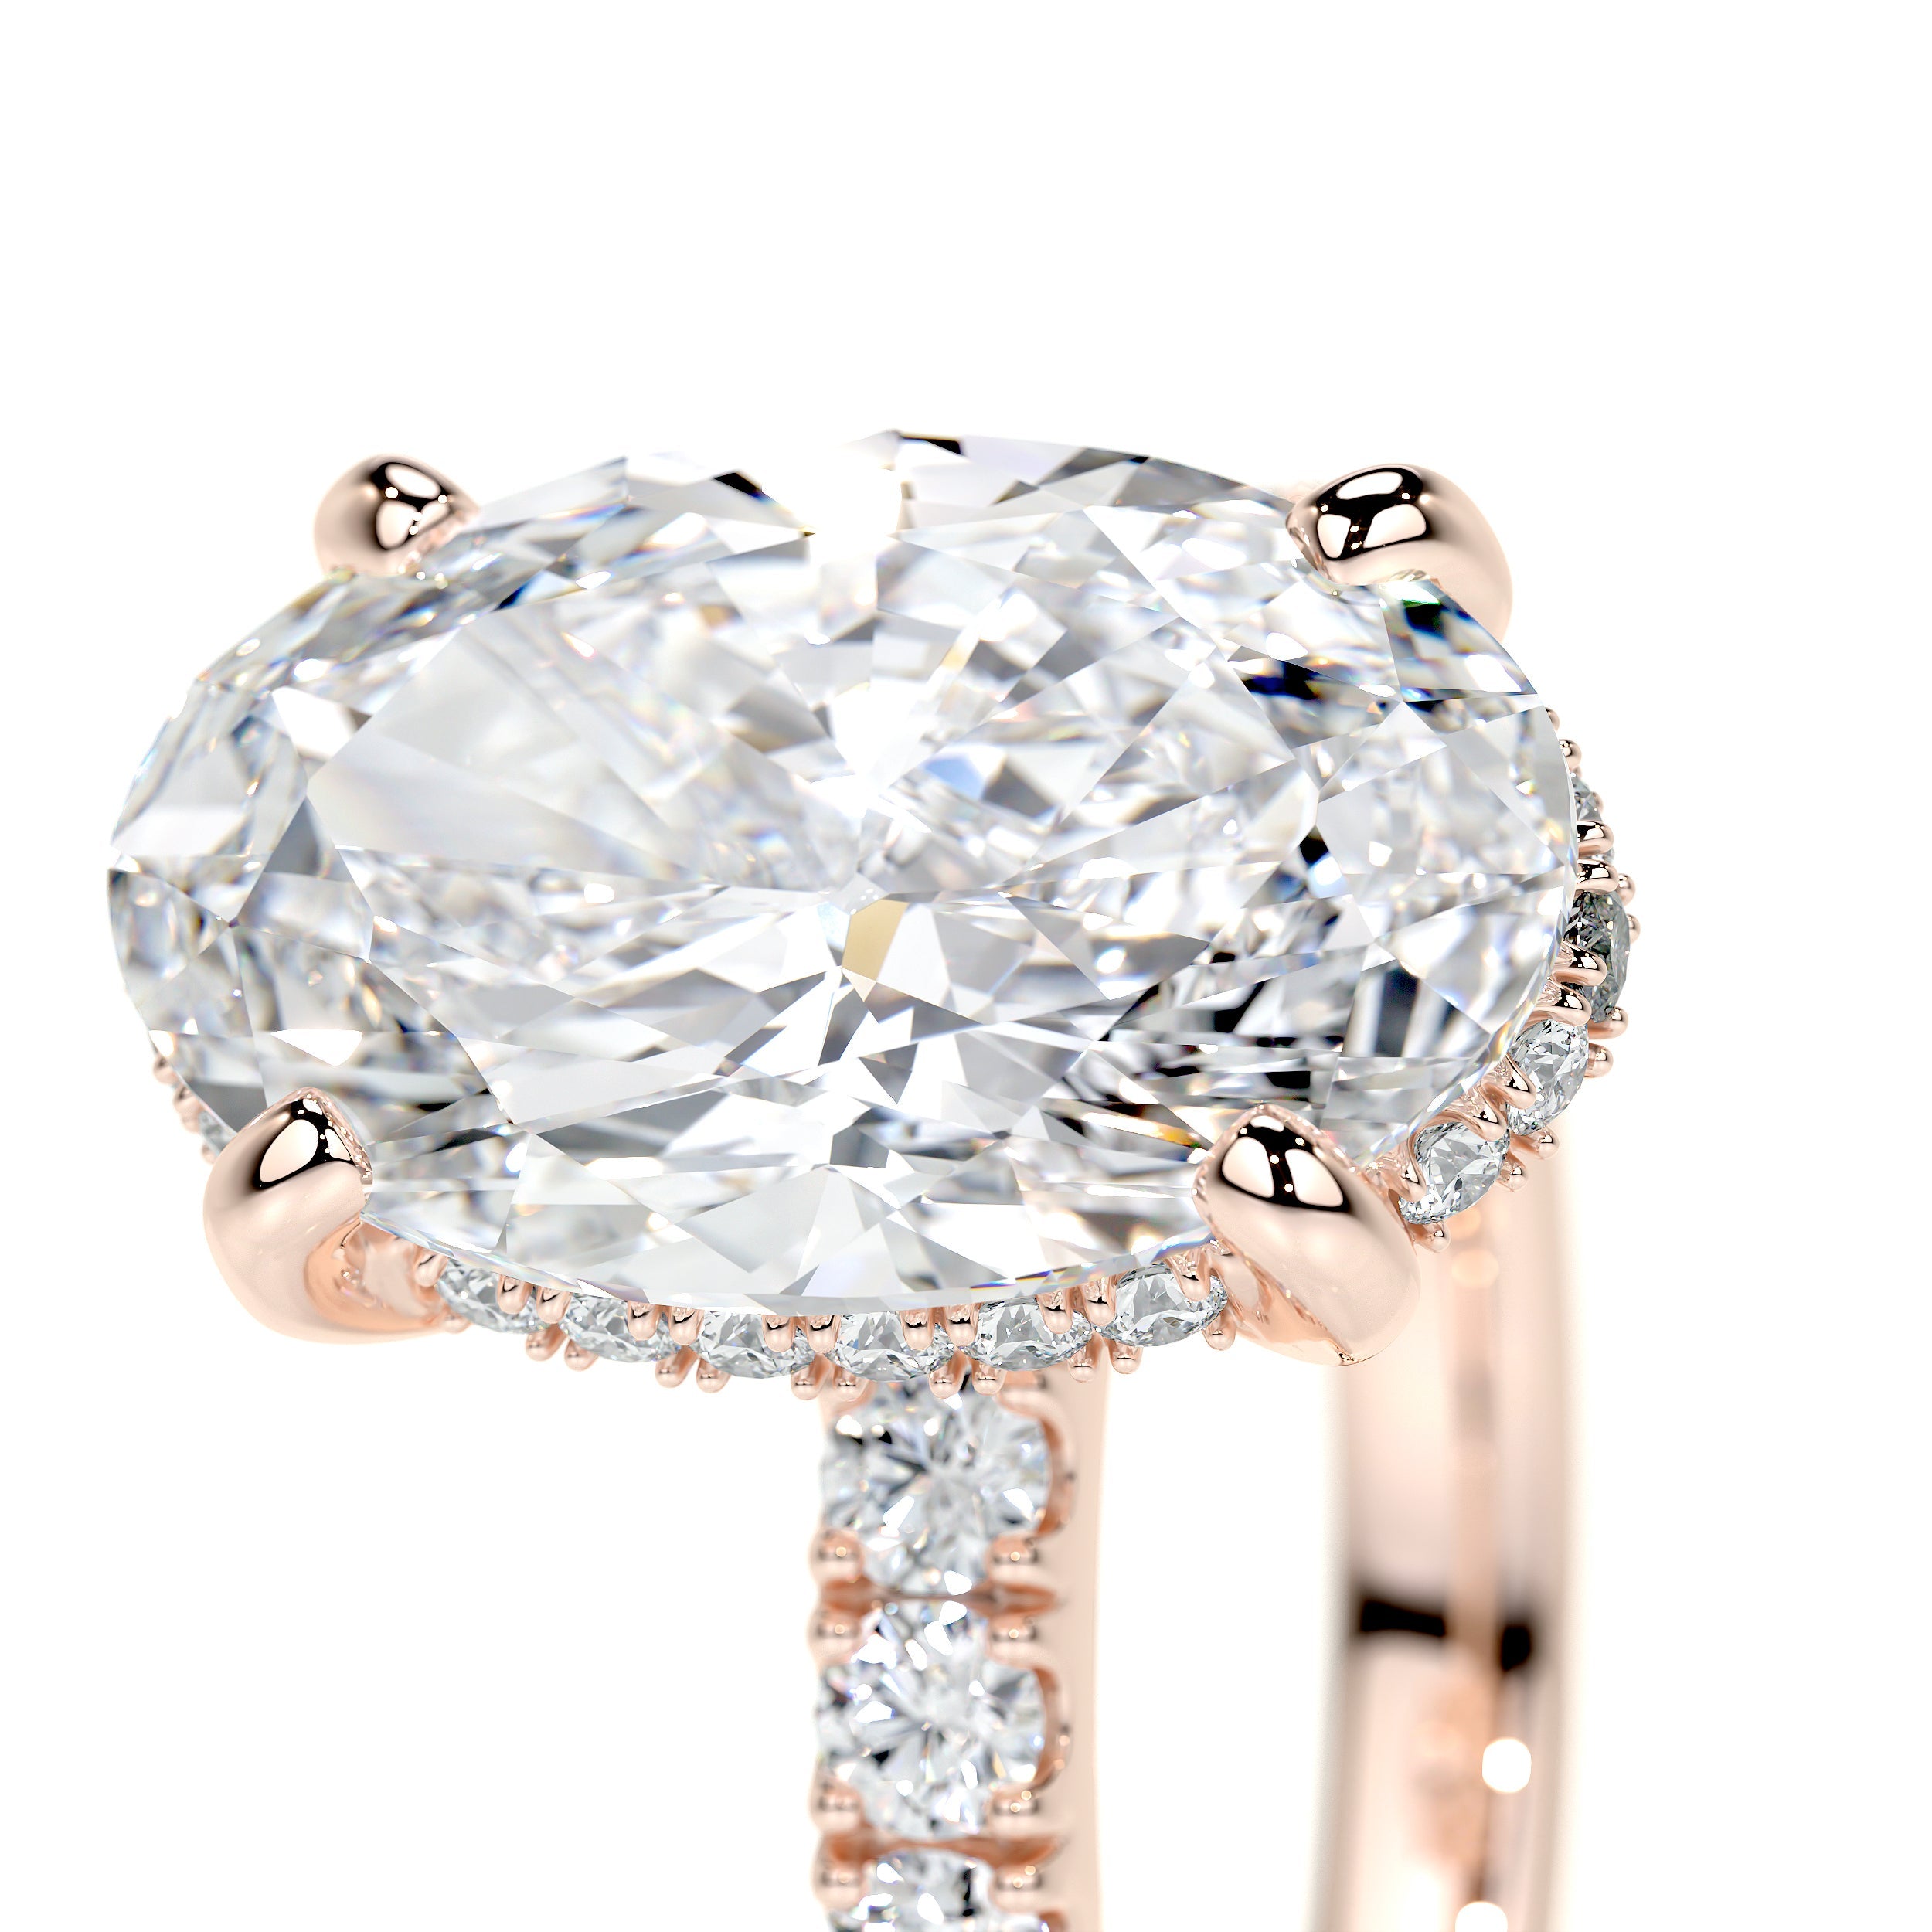 Lucy Lab Grown Diamond Ring   (3.5 Carat) -14K Rose Gold